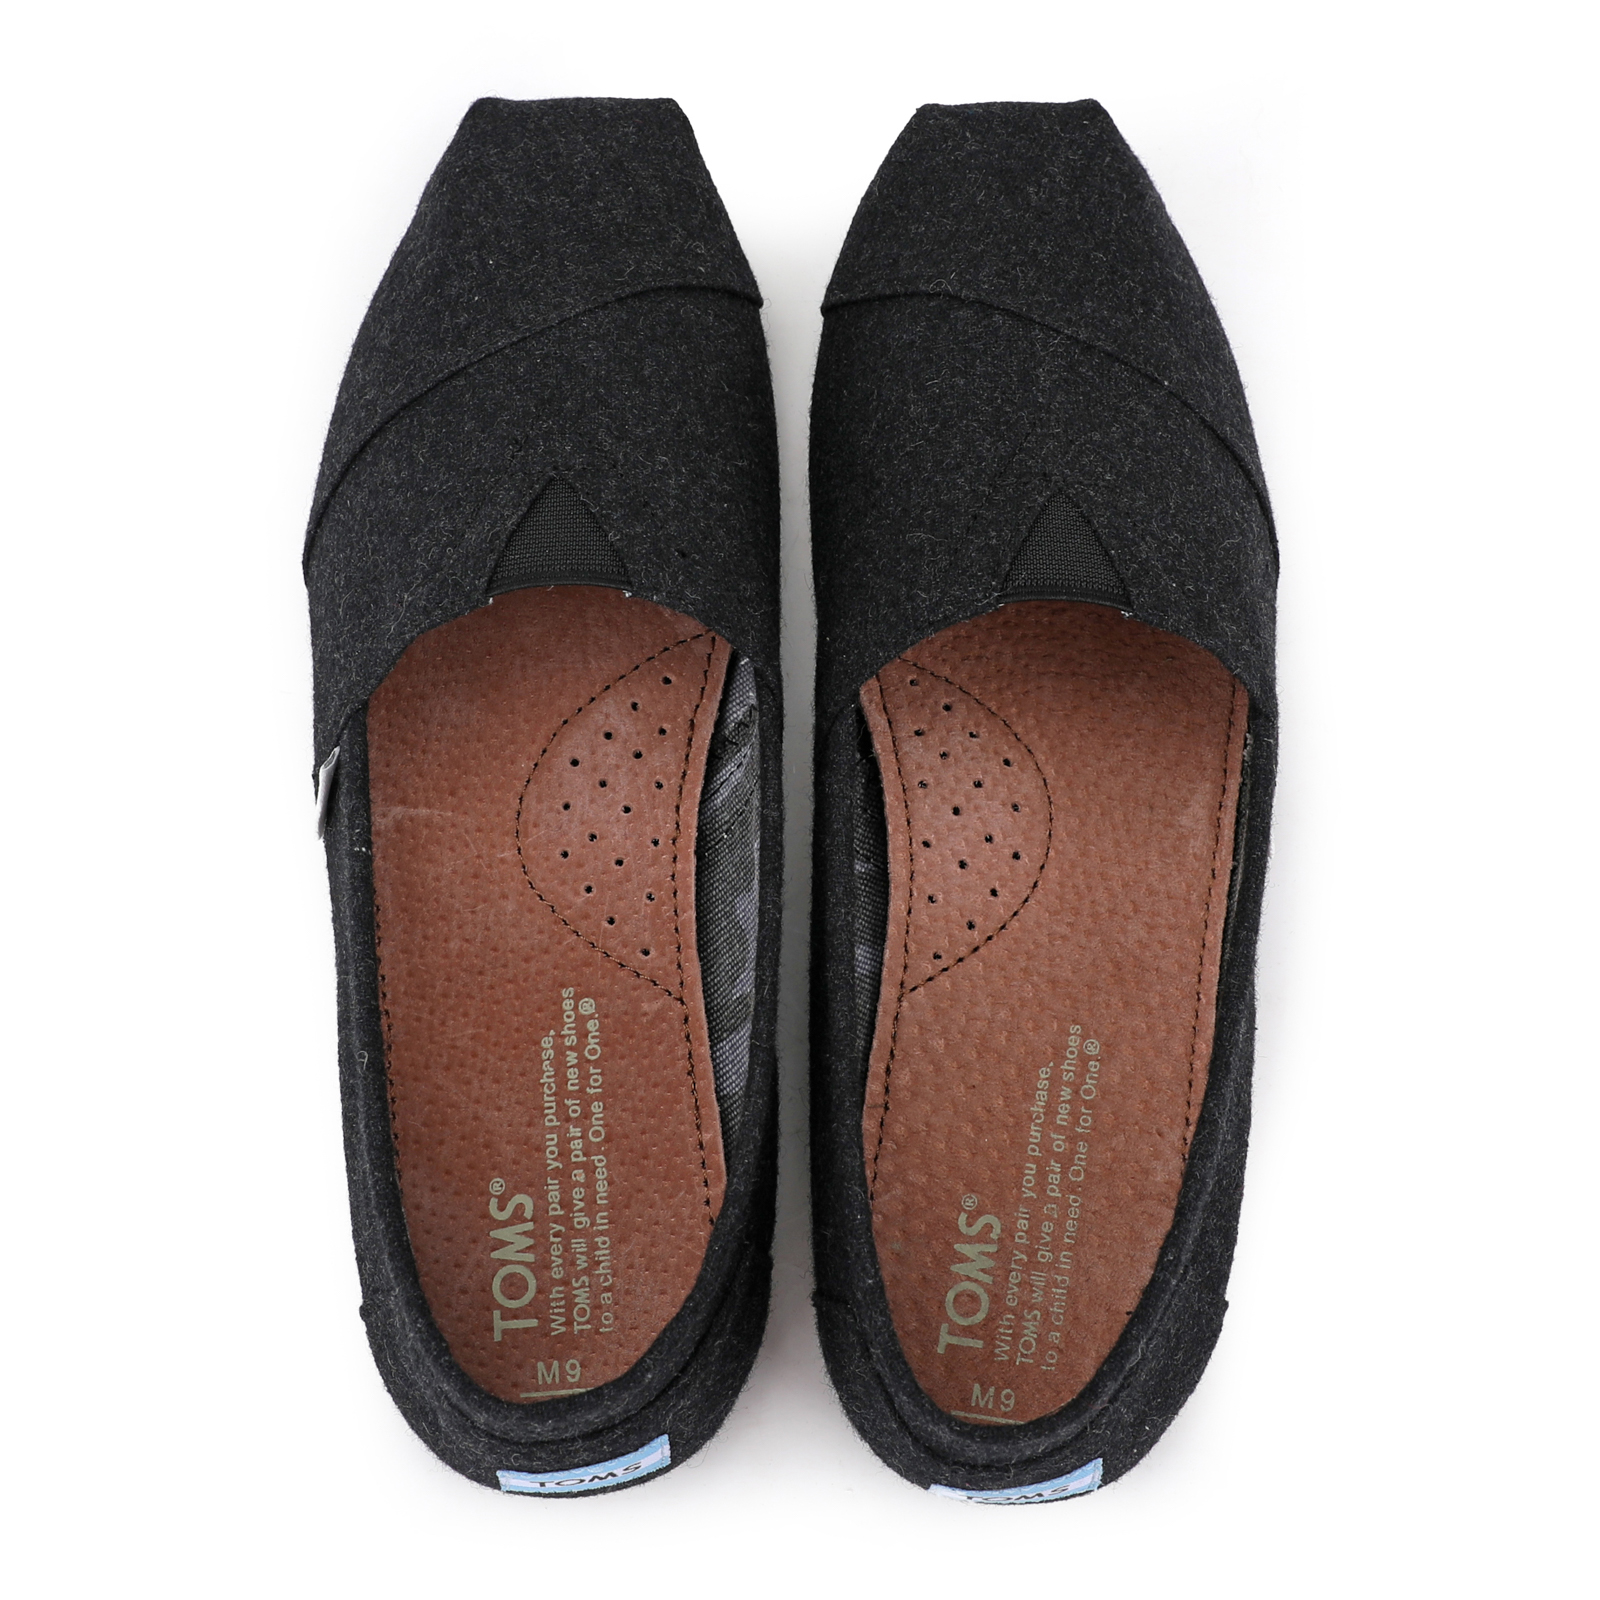 台灣Toms新款黑色法蘭絨男鞋 - 點擊圖片關閉